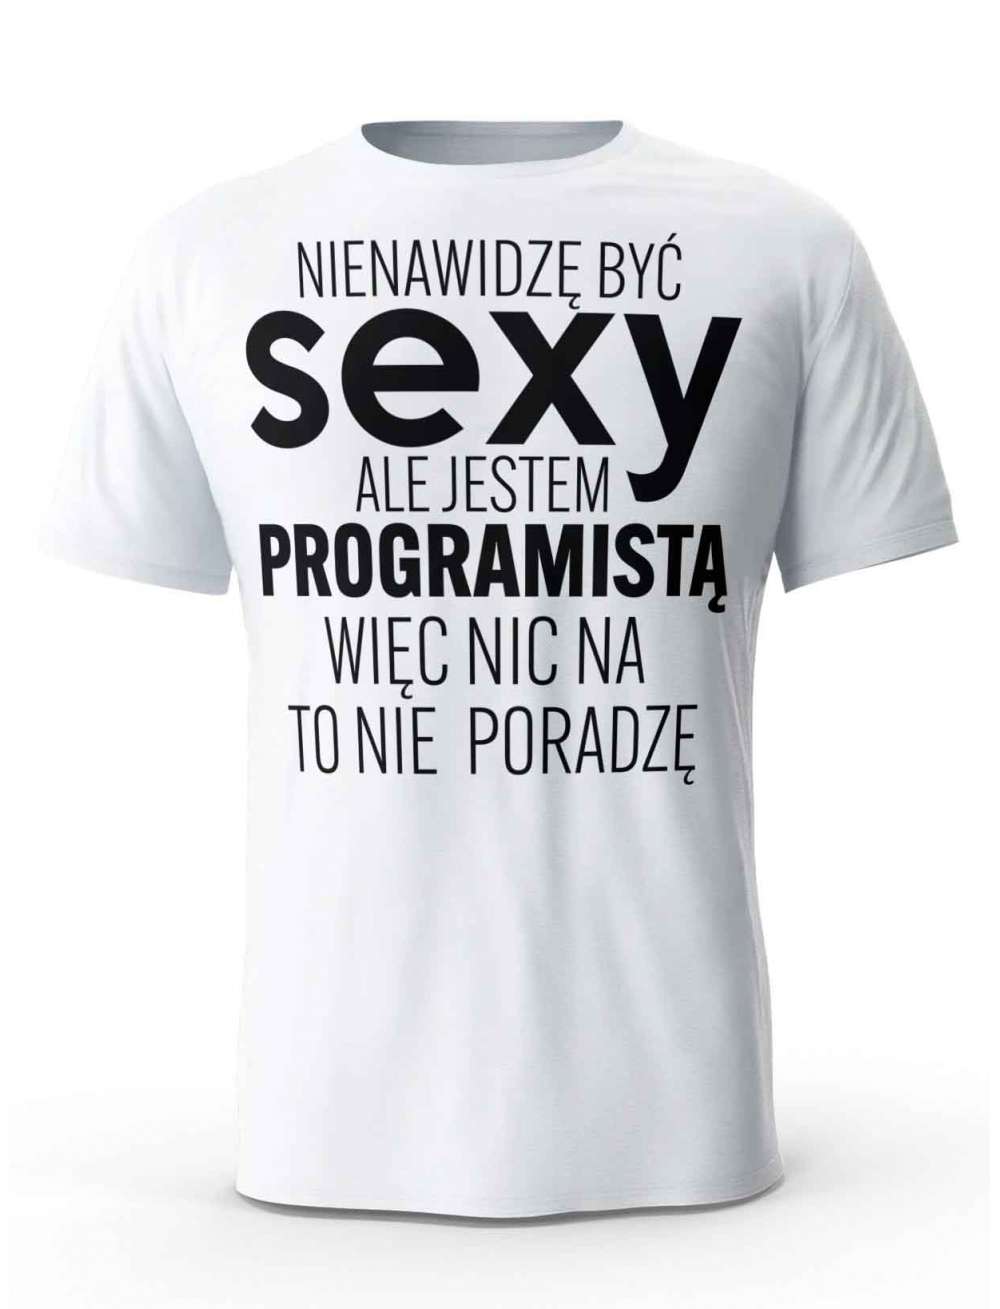 Koszulka Męska, Sexy Programista, Prezent Dla Mężczyzny